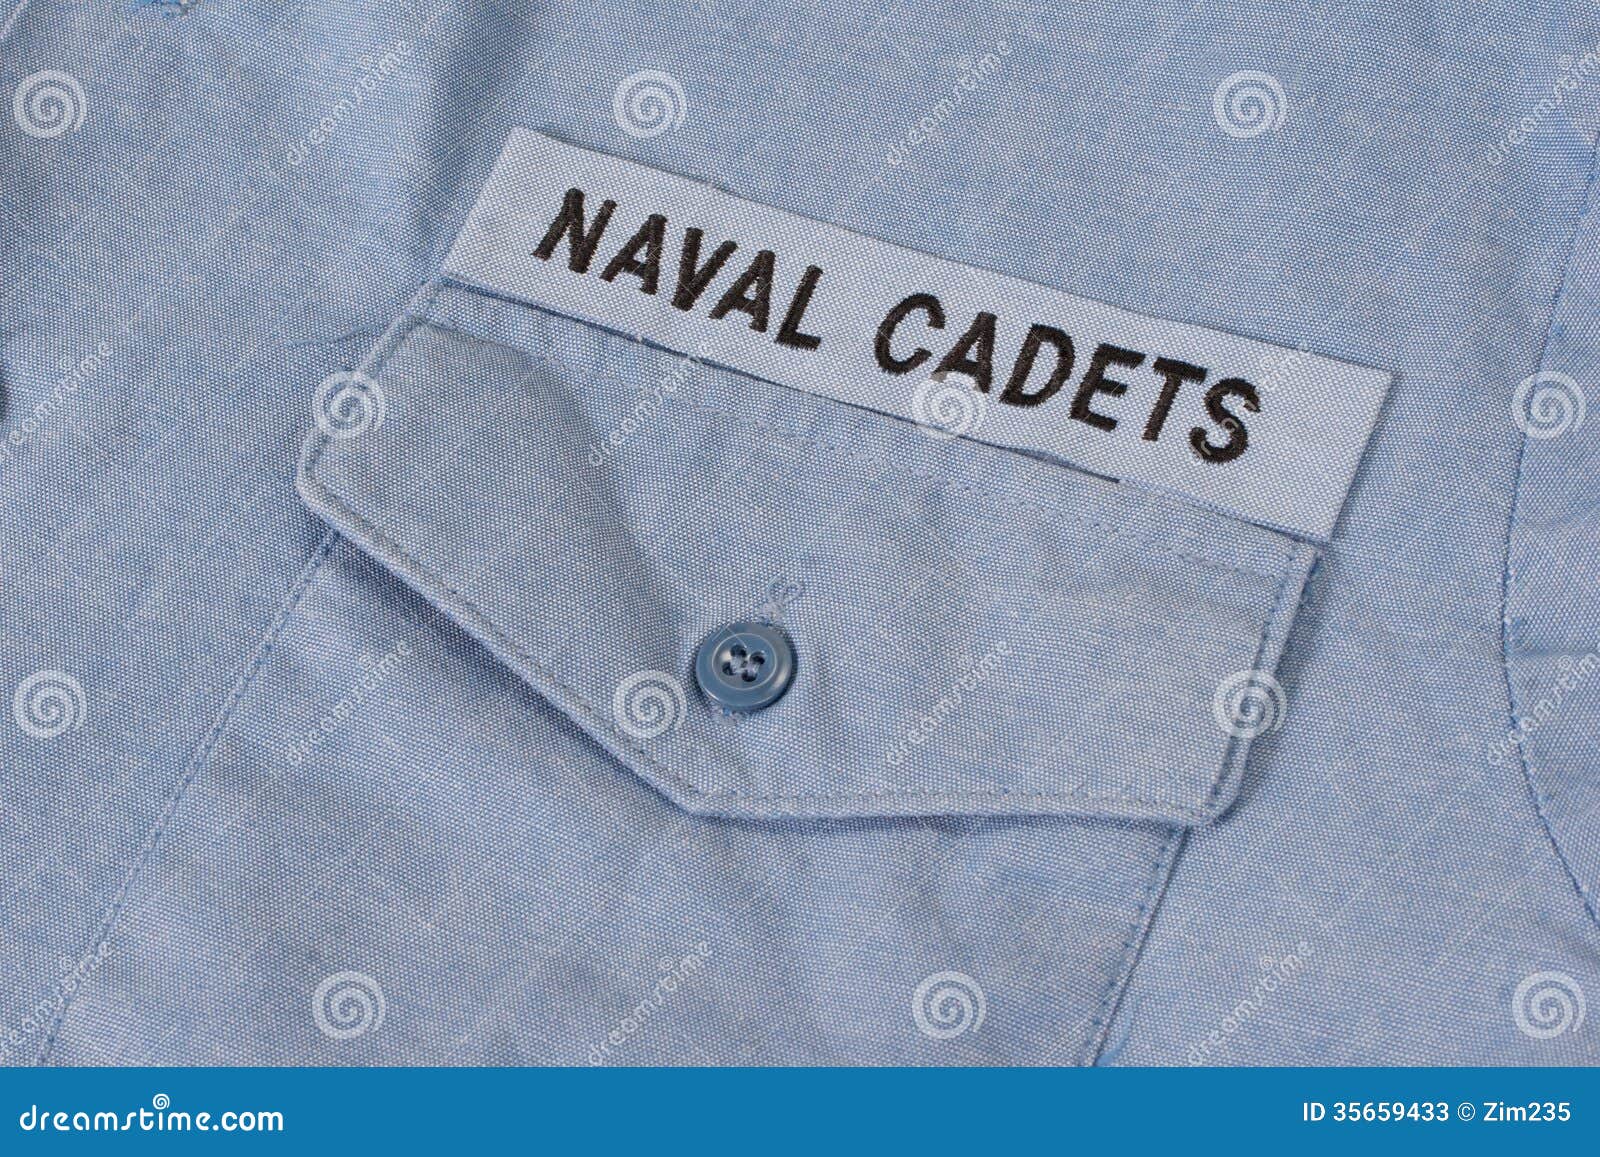 us naval cadets uniform